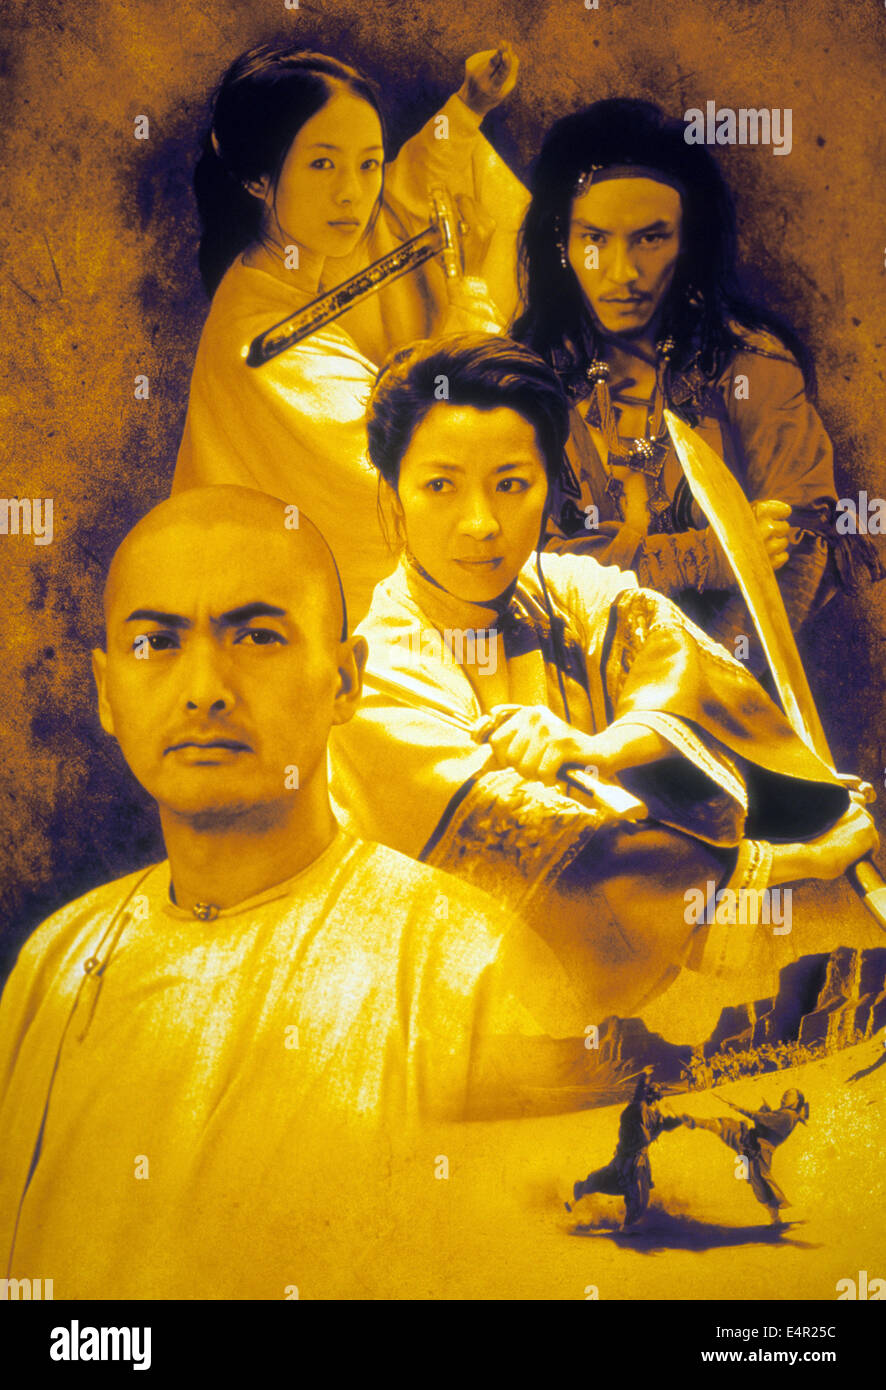 La tigre e il dragone Artwork per 2000 Columbia Asia film con Chow Yun-Fat (anteriore) e Michelle Yeo (centrale) Foto Stock